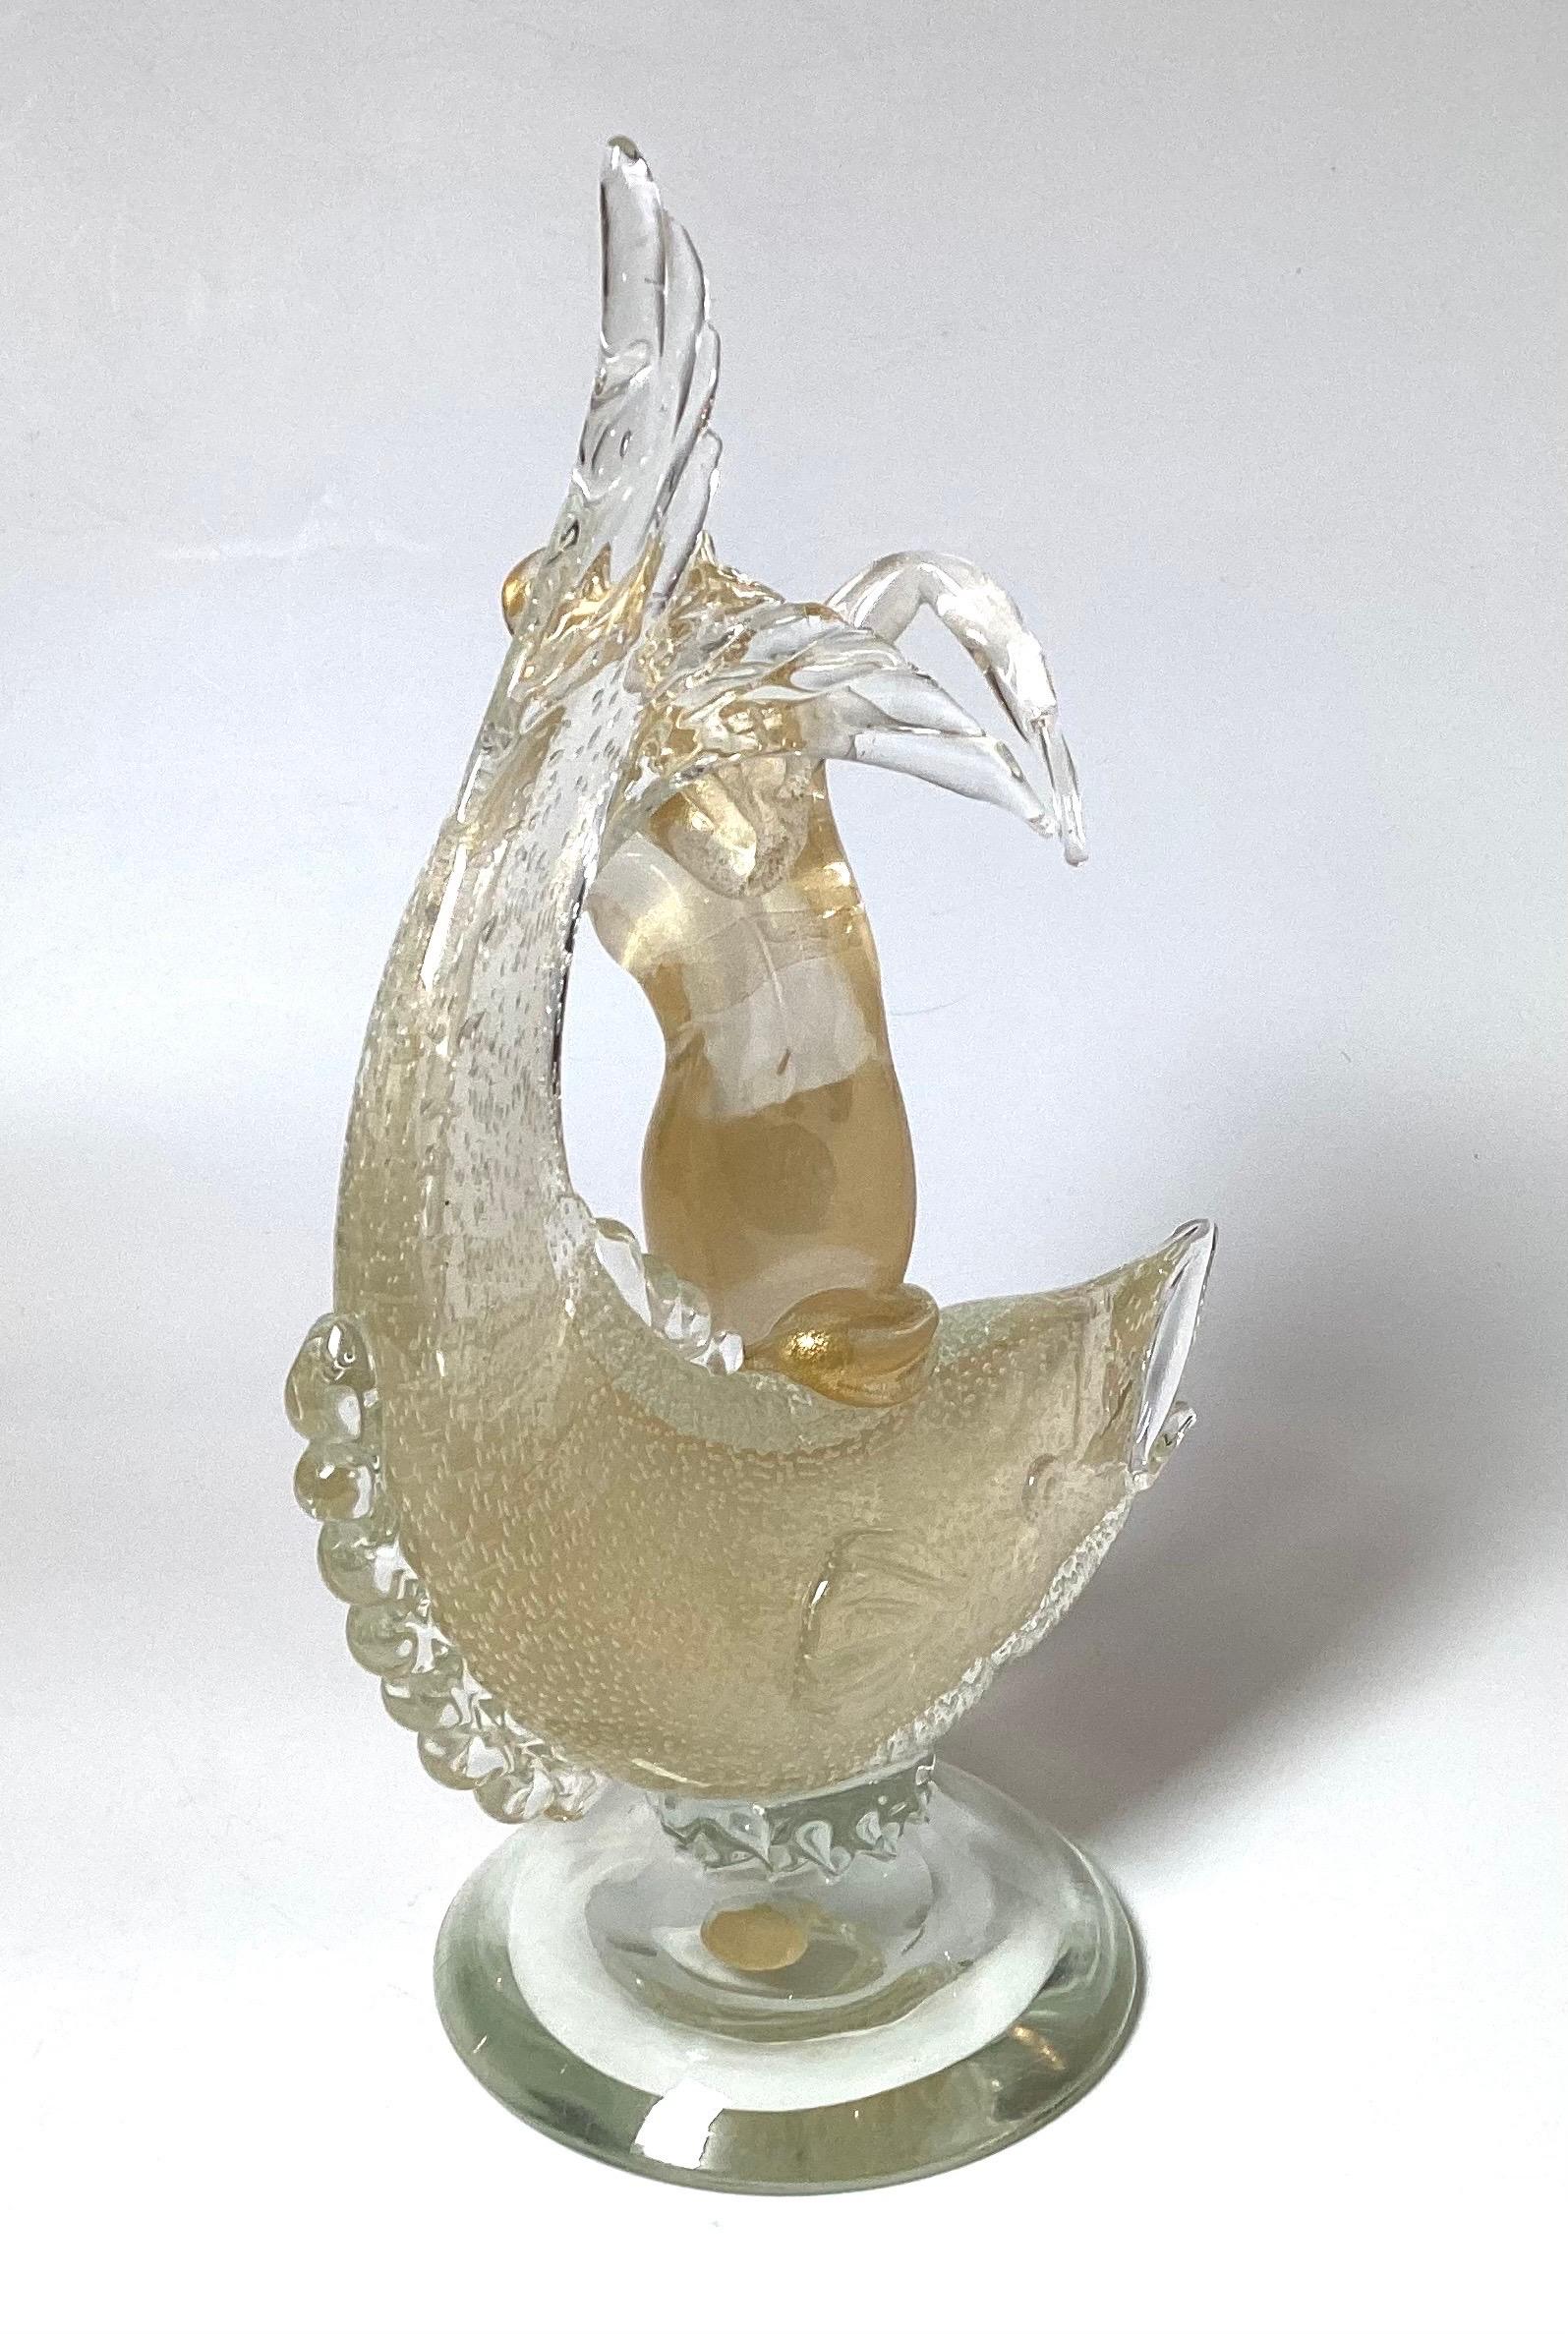 Eine seltene Salviati Murano hatte geblasen Fisch und Meerjungfrau Skulptur mit internen Goldfleck und bullicante Design.  
Seit 1859 erforscht Salviati die neuen Sprachen des Murano-Glases und interpretiert und modernisiert seinen unerschöpflichen